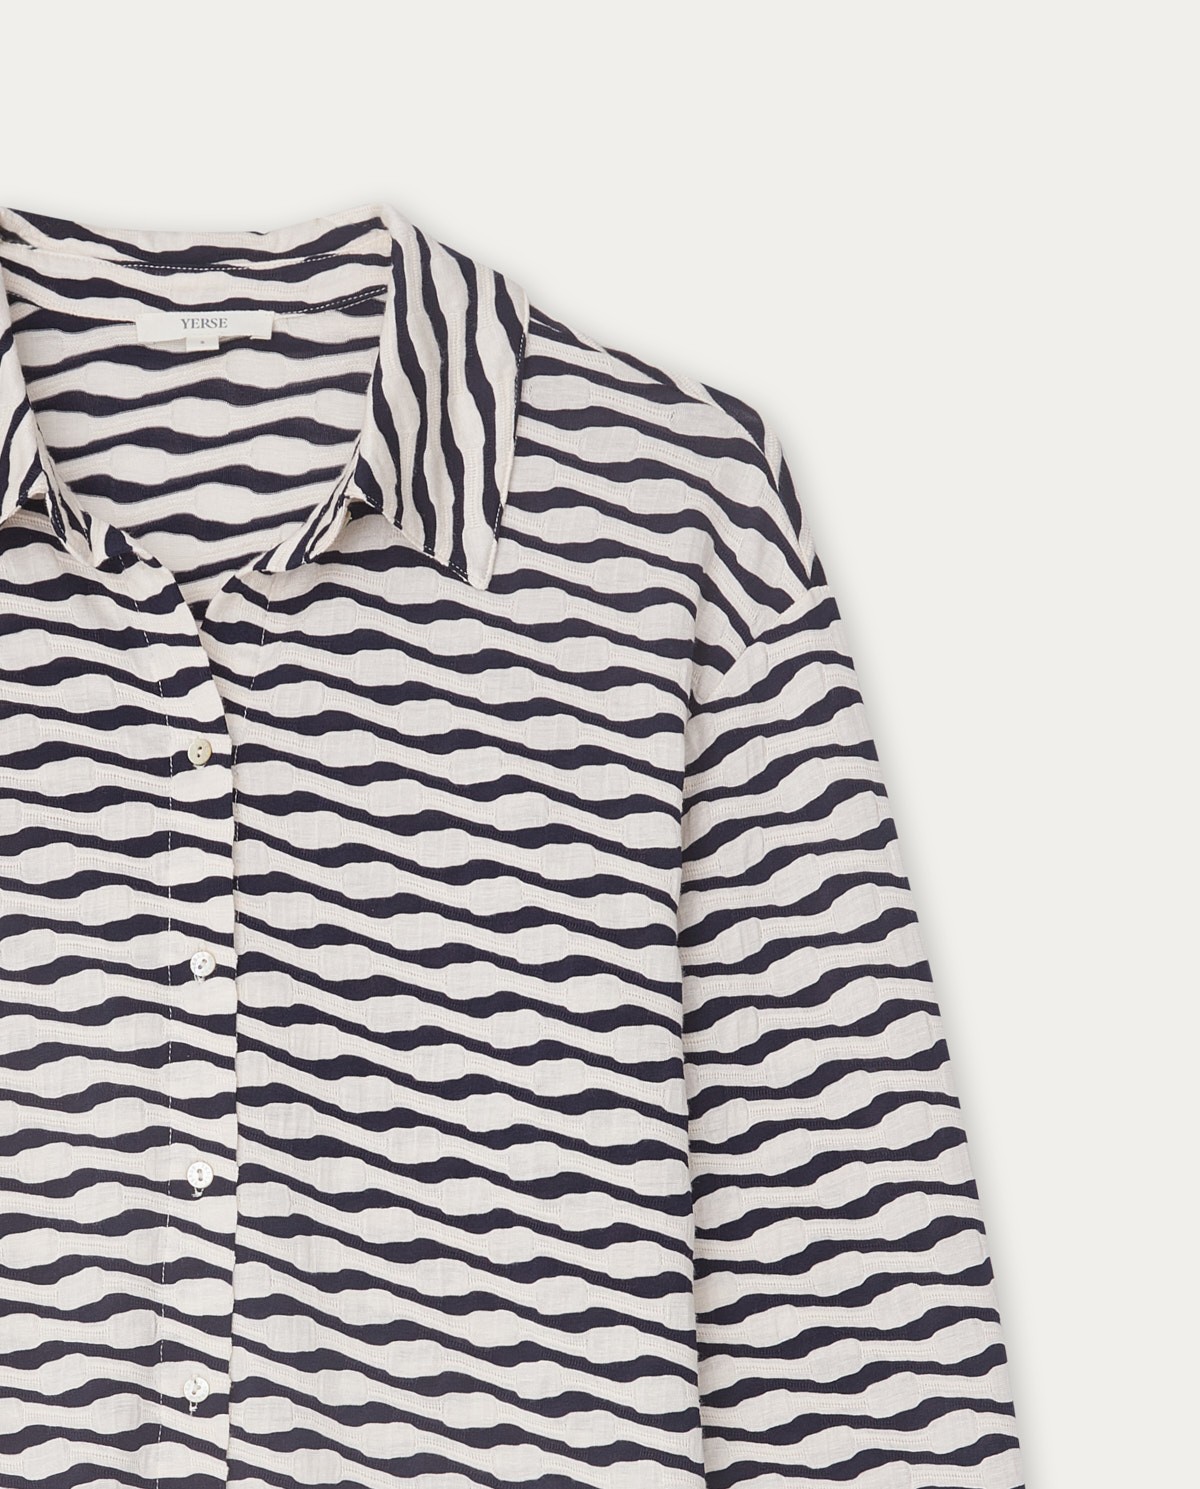 Jacquard knit shirt ecru and navy stripes 6